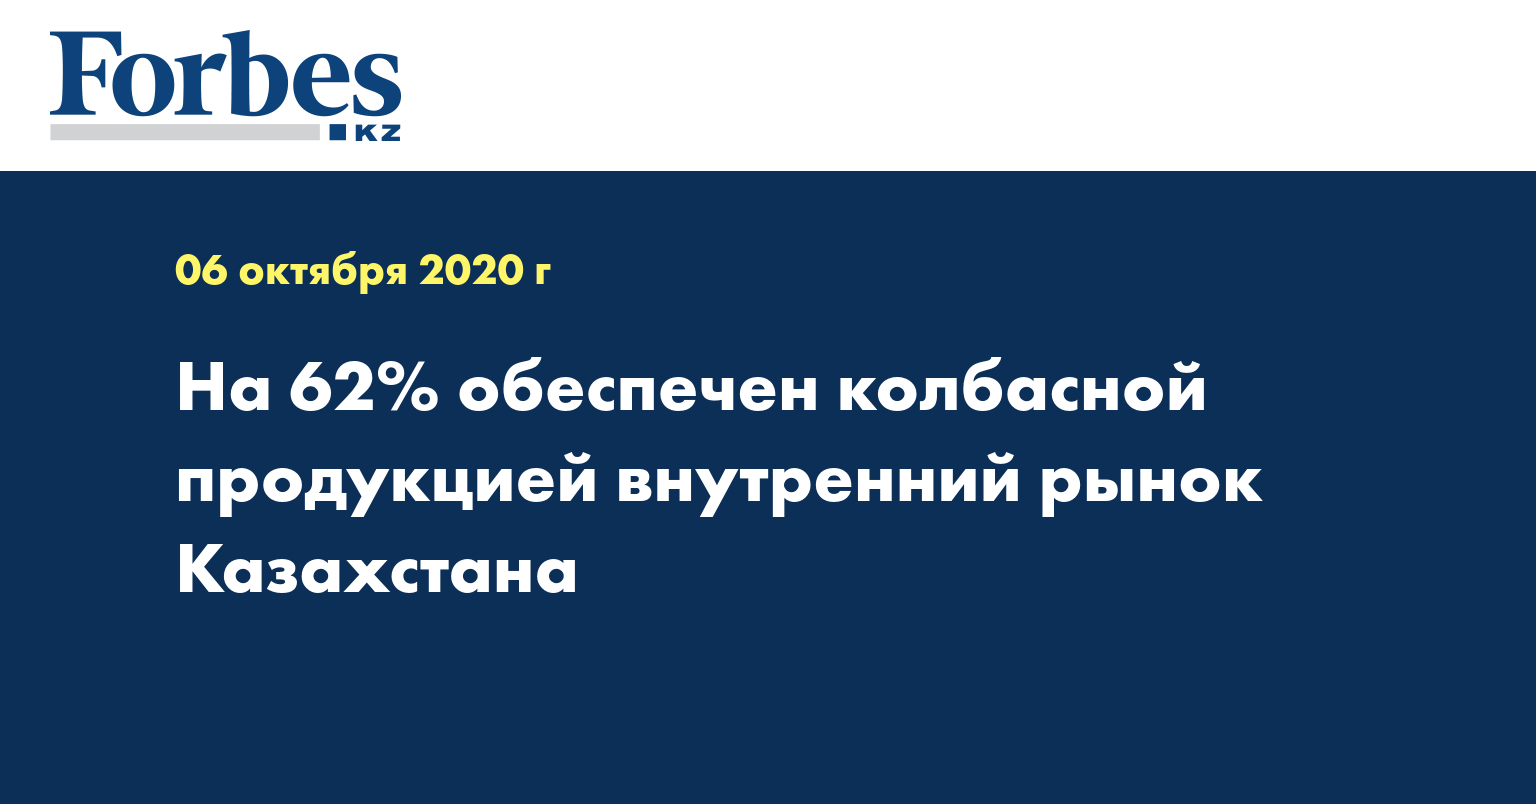 На 62% обеспечен колбасной продукцией внутренний рынок Казахстана